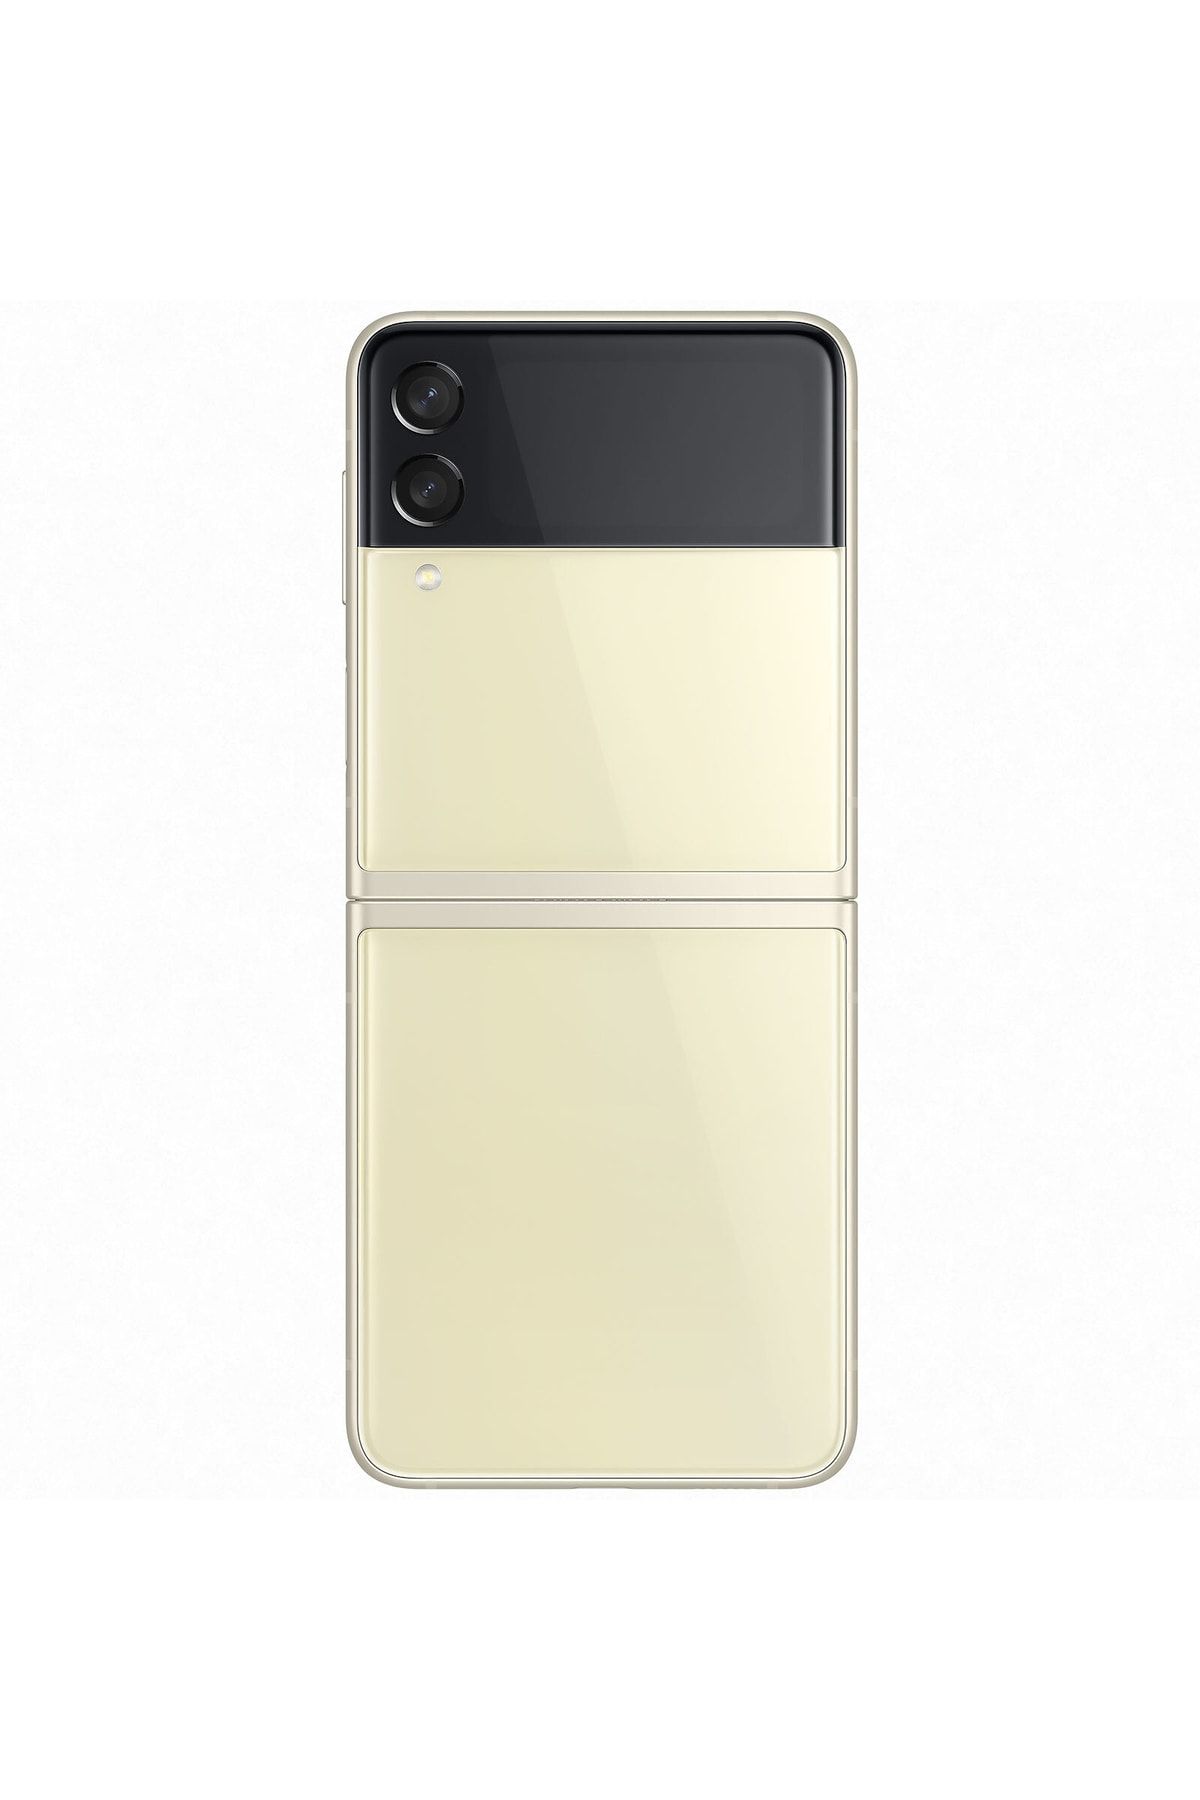 Samsung Yenilenmiş Galaxy Z Flip 3 128GB Gold Cep Telefonu (12 Ay Garantili) - B Kalite